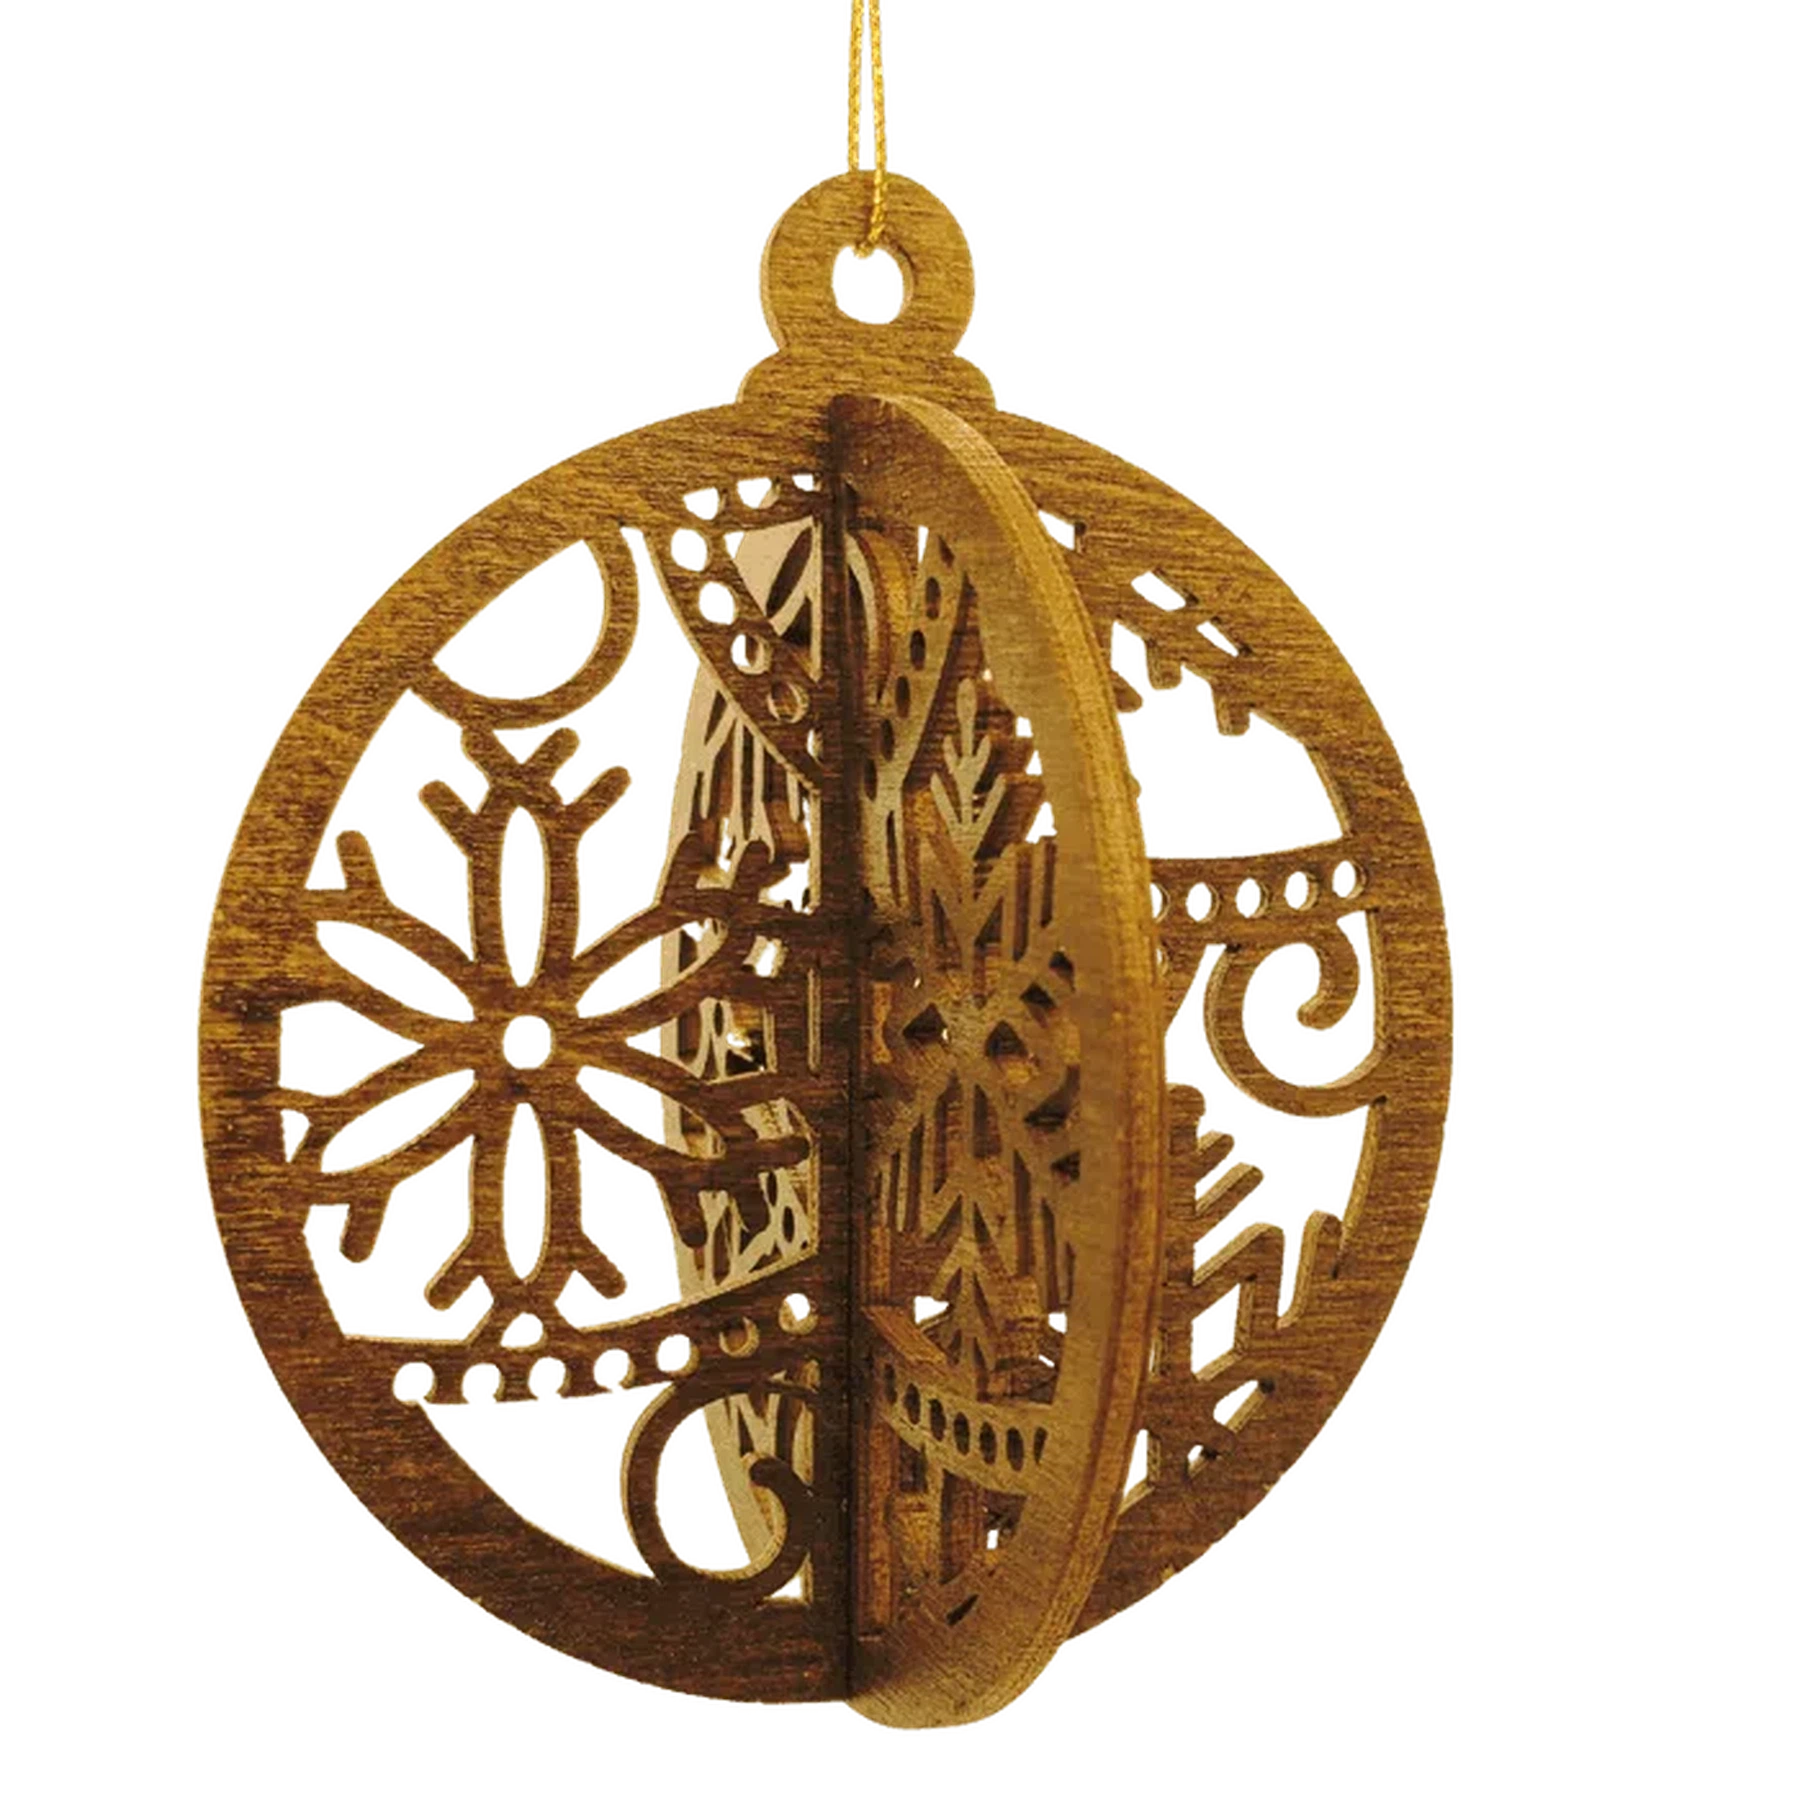 Natural Birch Interlocking 3-D Round Ornaments